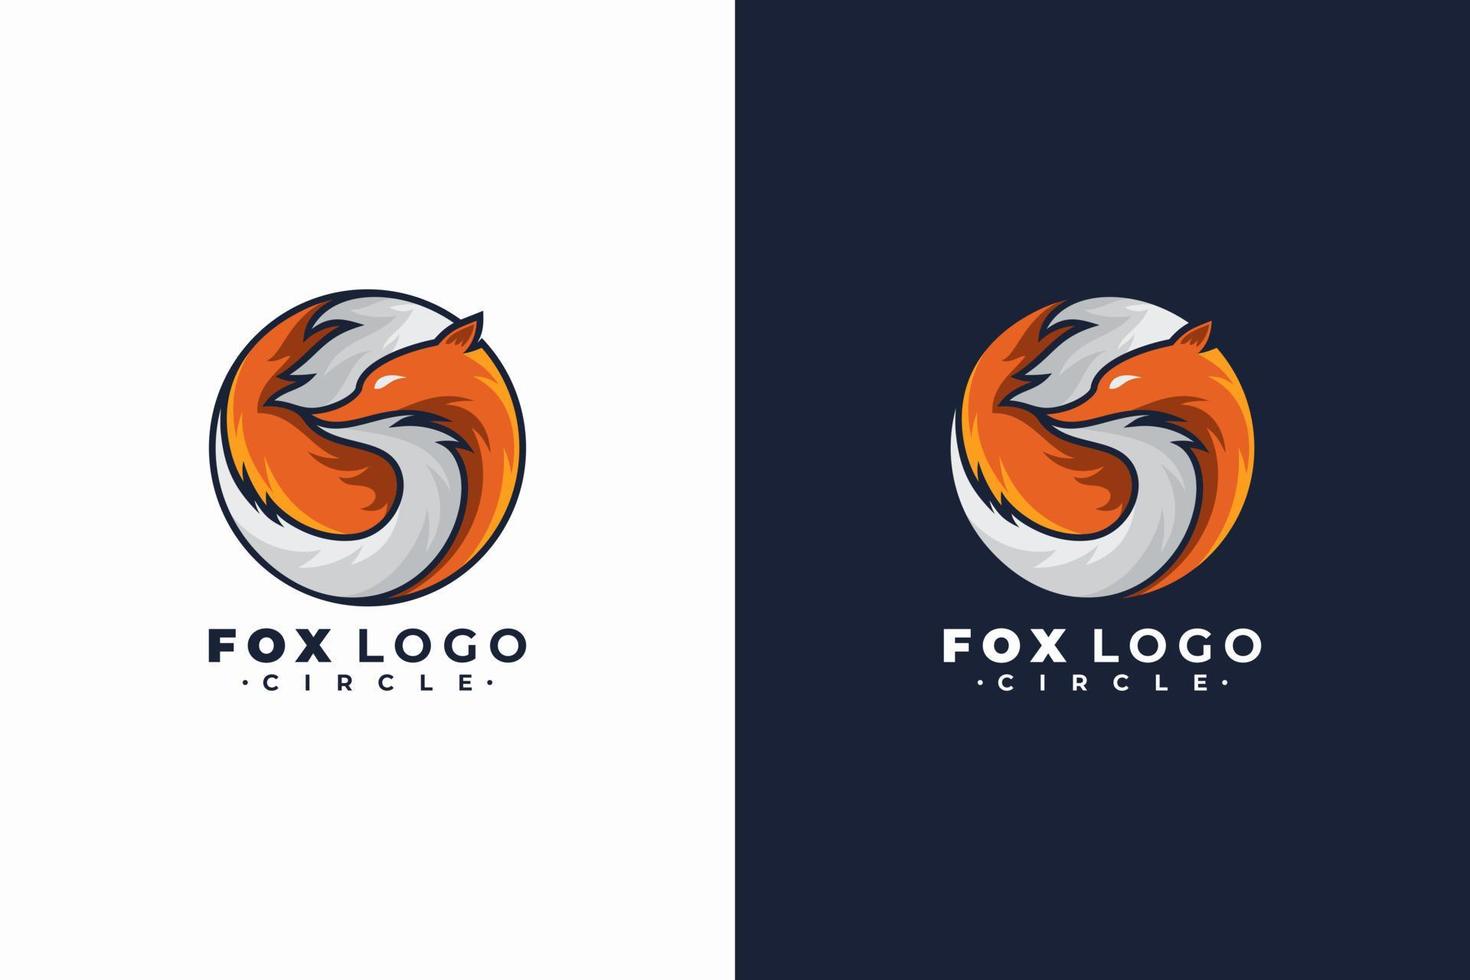 vetor de forma de círculo de logotipo de raposa